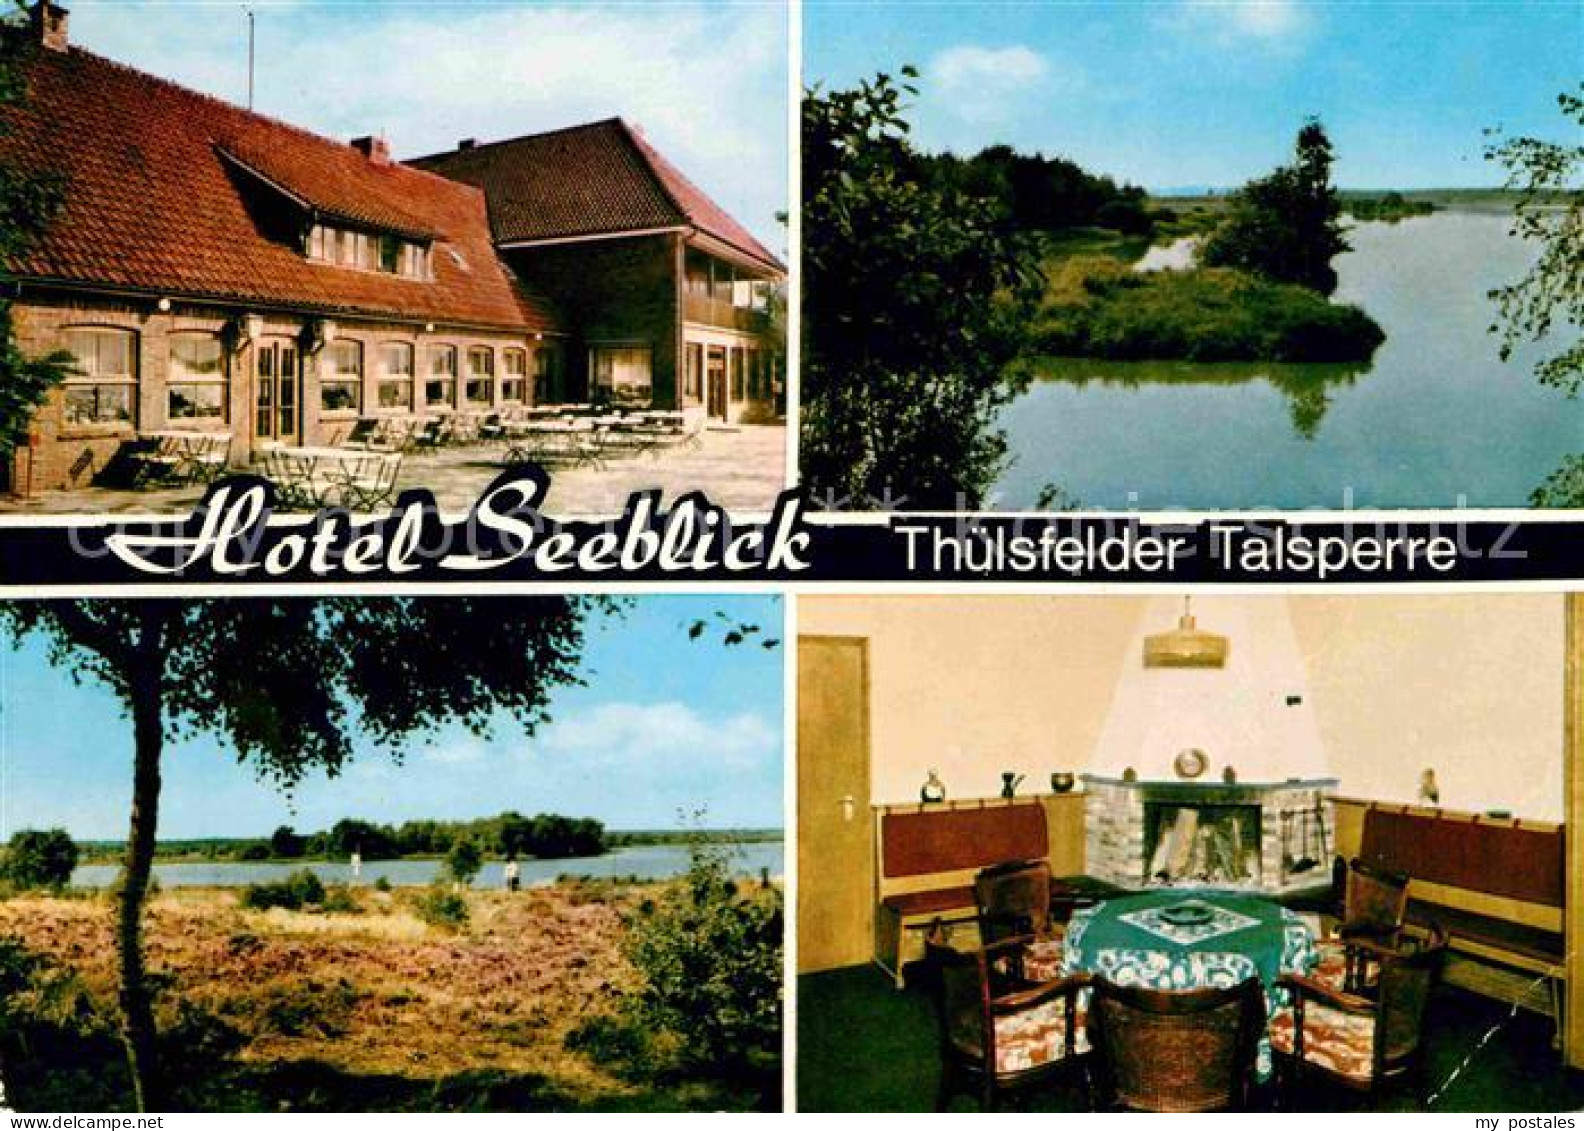 72715590 Thuelsfelder Talsperre Hotel Seeblick Kaminzimmer Landschaftspanorama C - Cloppenburg